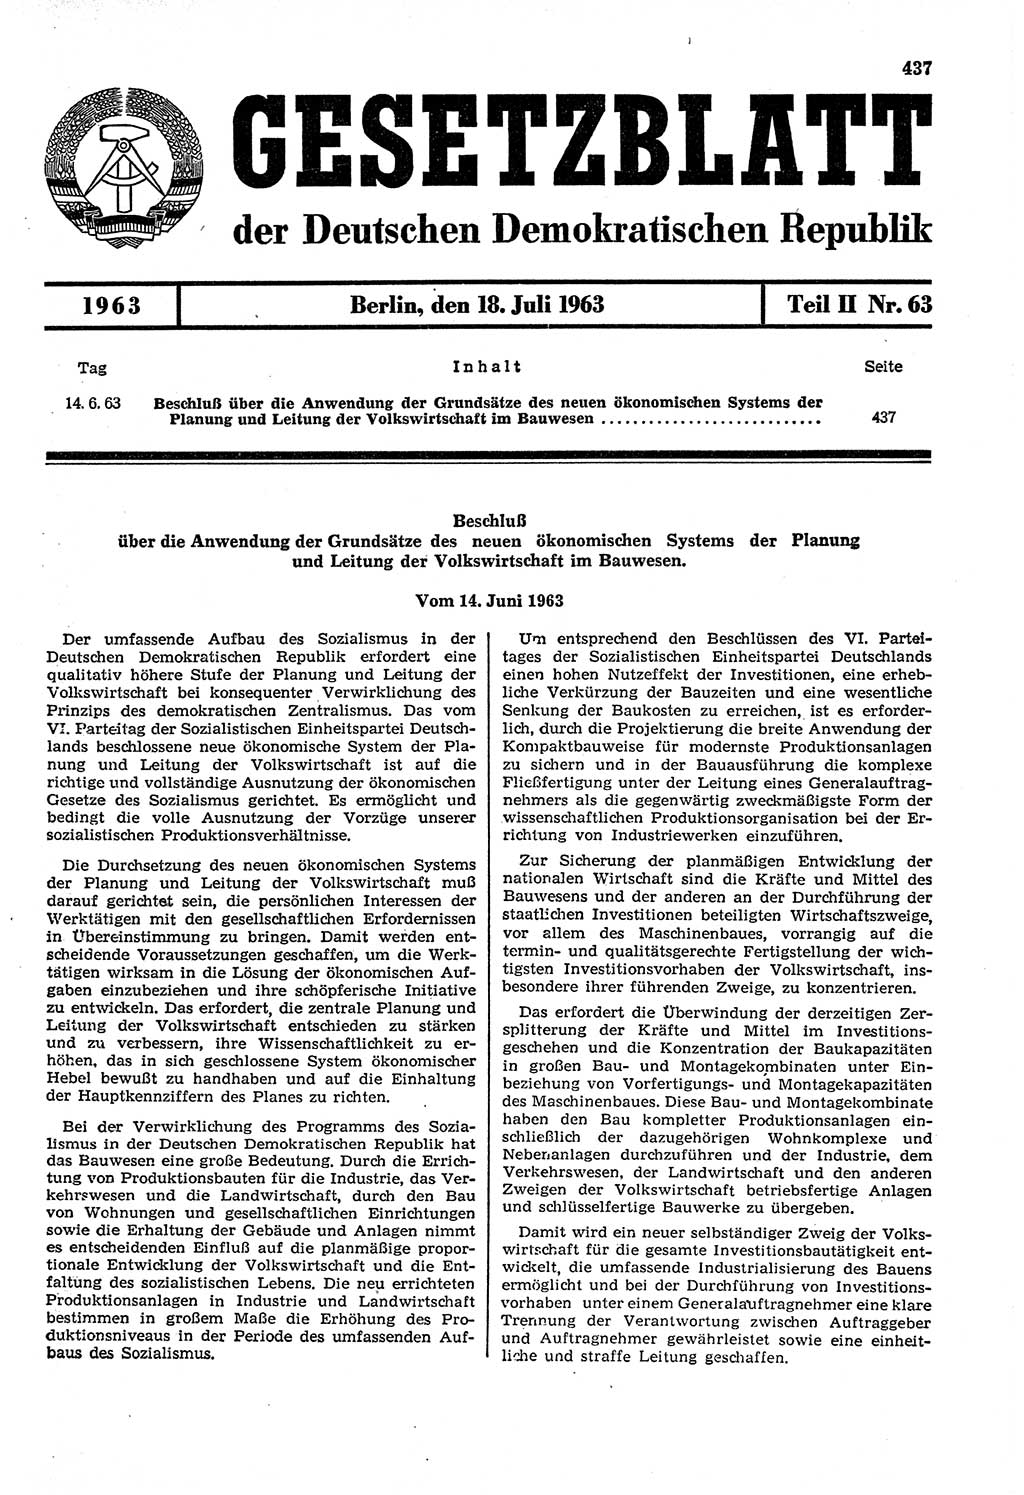 Gesetzblatt (GBl.) der Deutschen Demokratischen Republik (DDR) Teil ⅠⅠ 1963, Seite 437 (GBl. DDR ⅠⅠ 1963, S. 437)